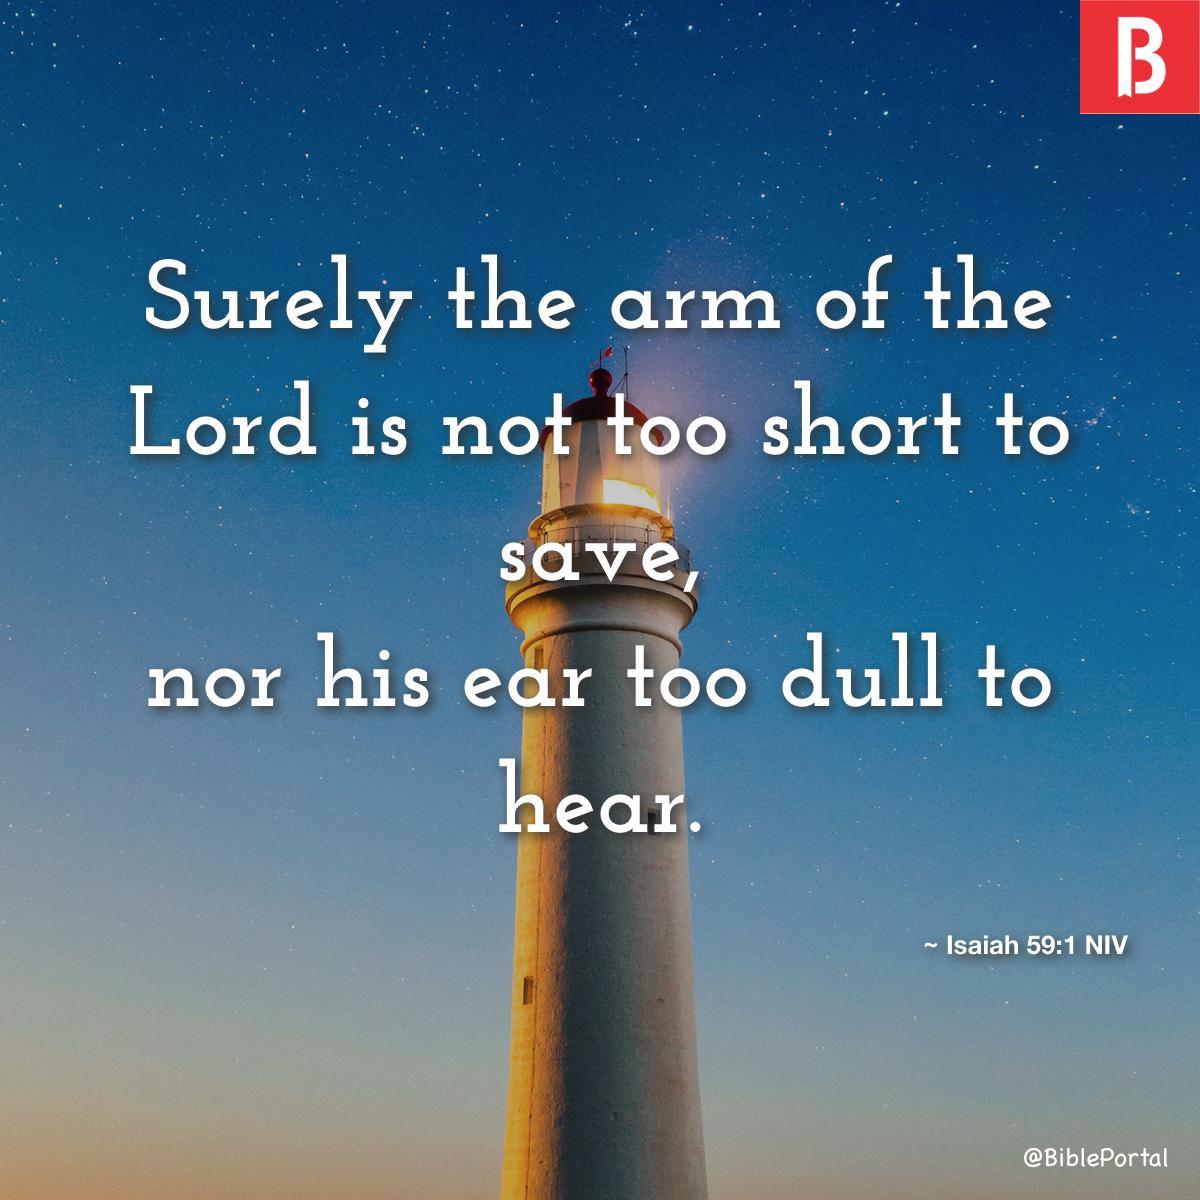 Isaiah 59:1 NIV